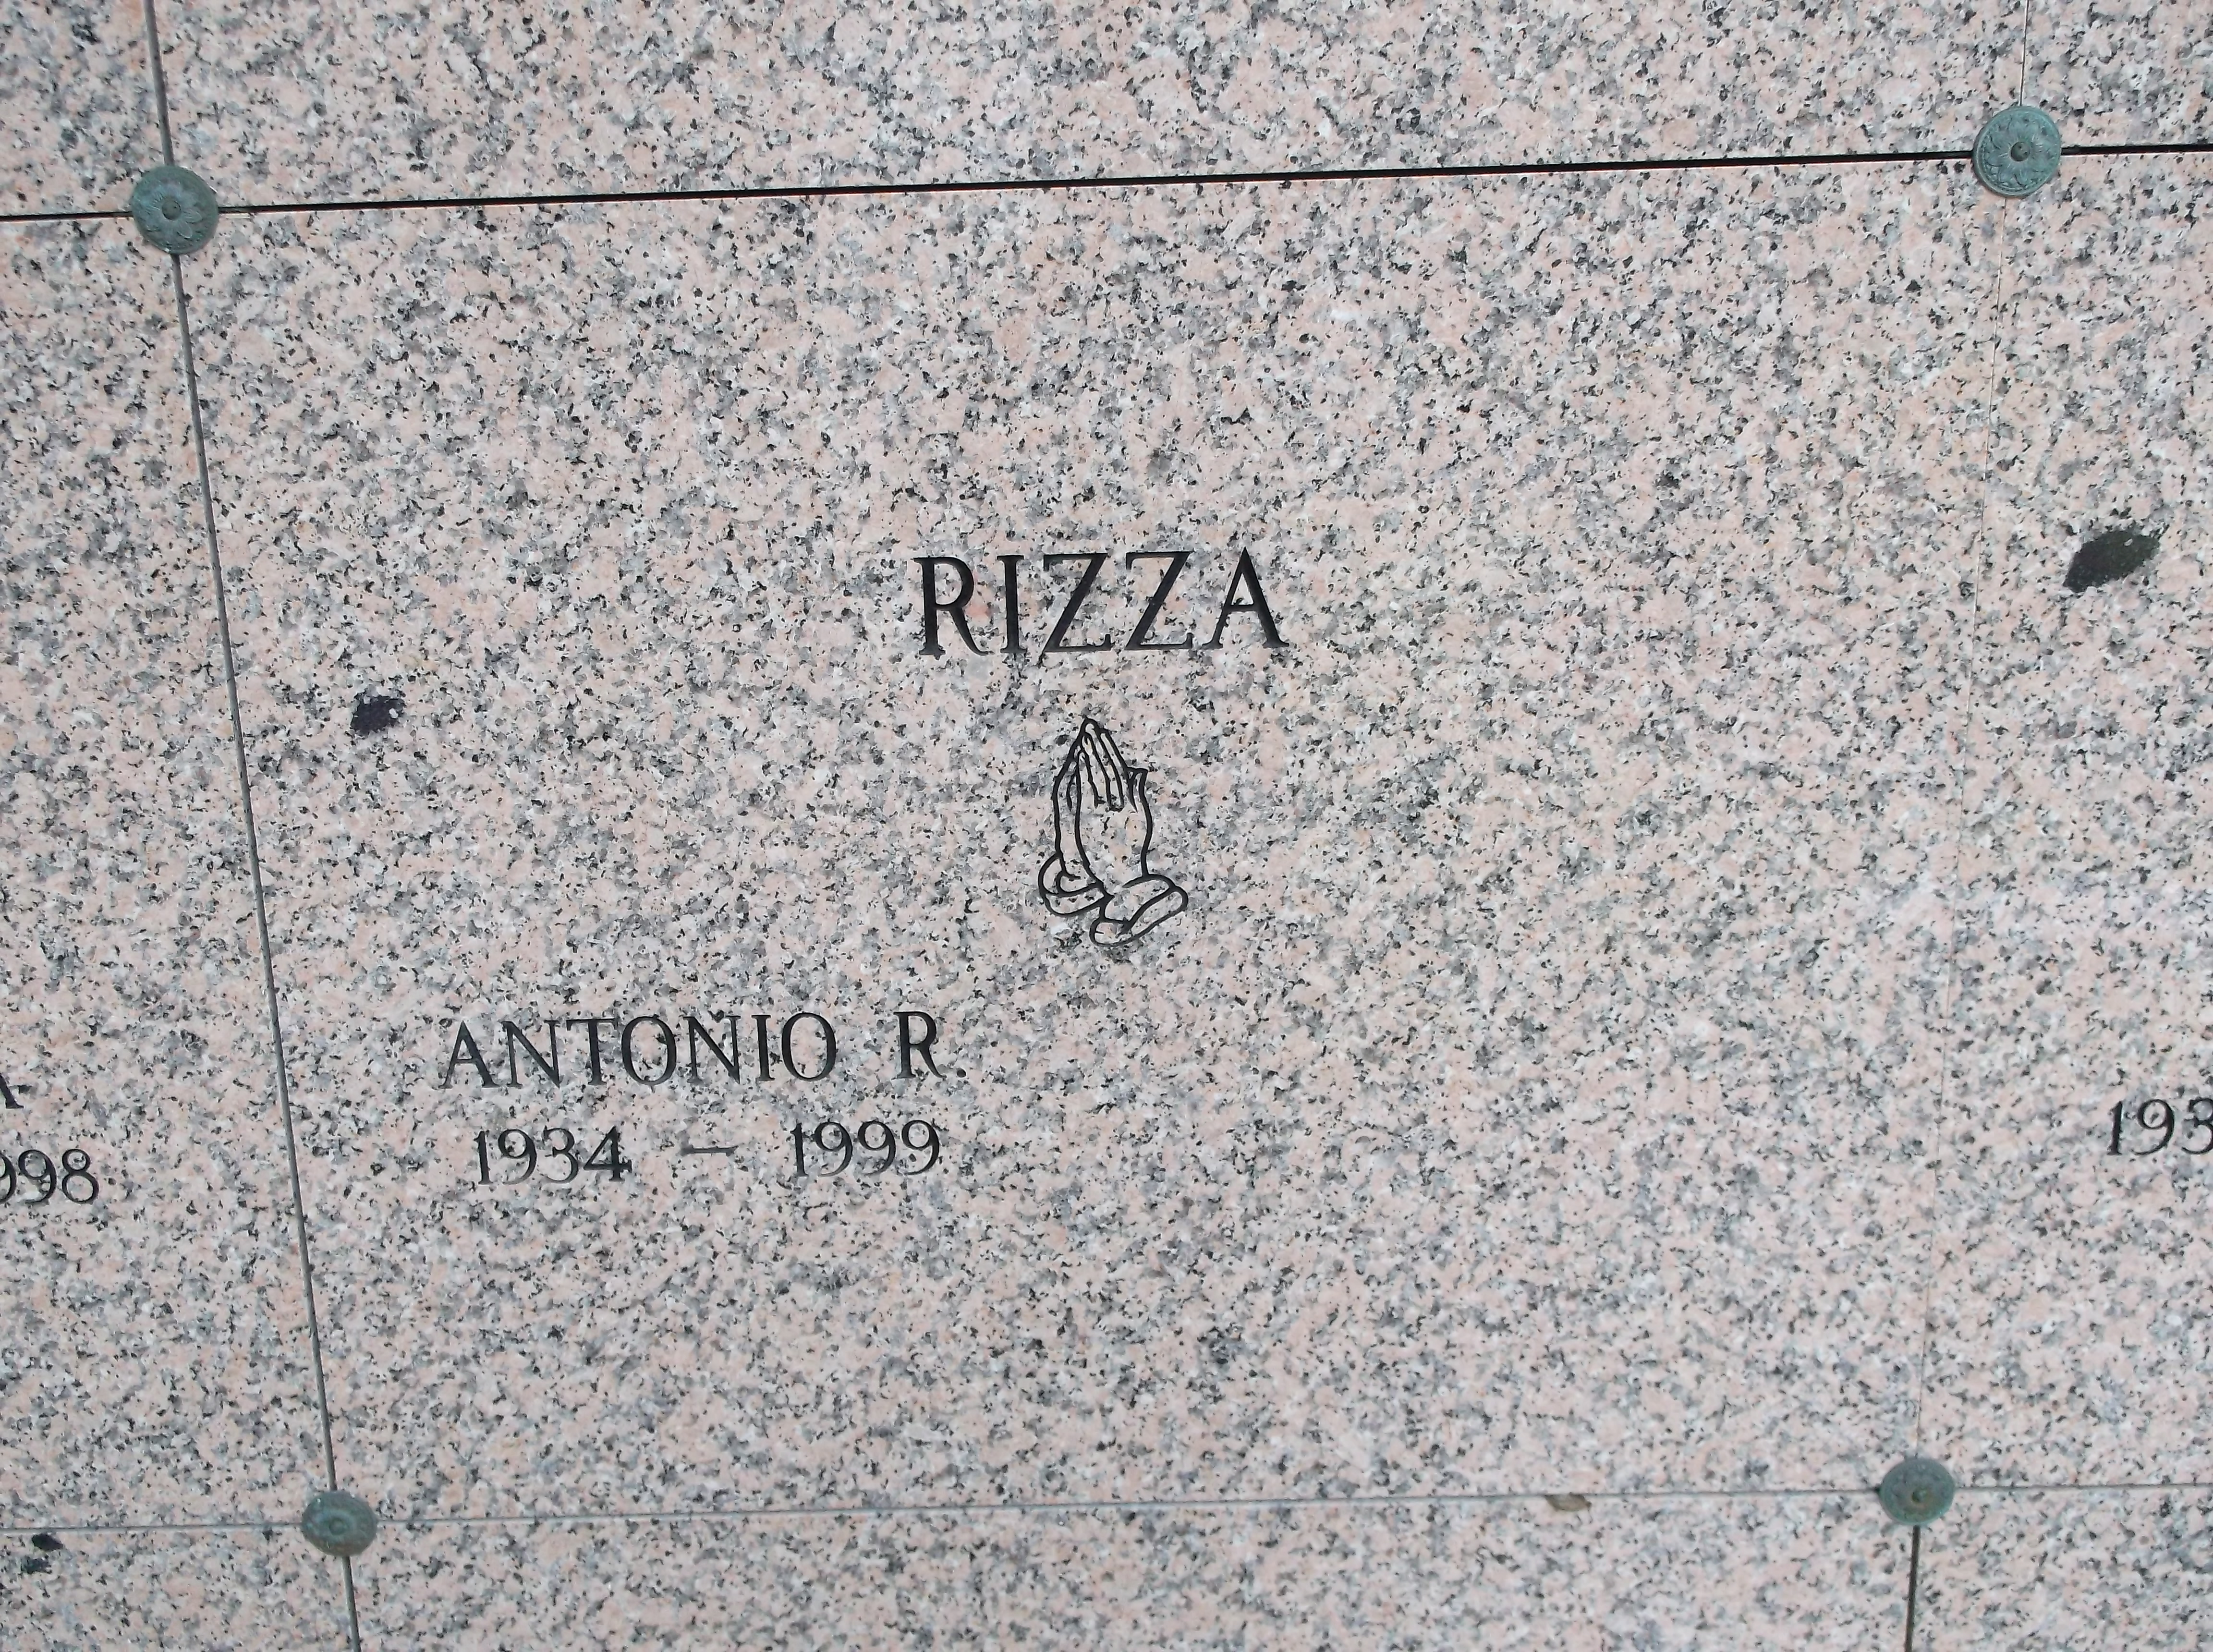 Antonio R Rizza